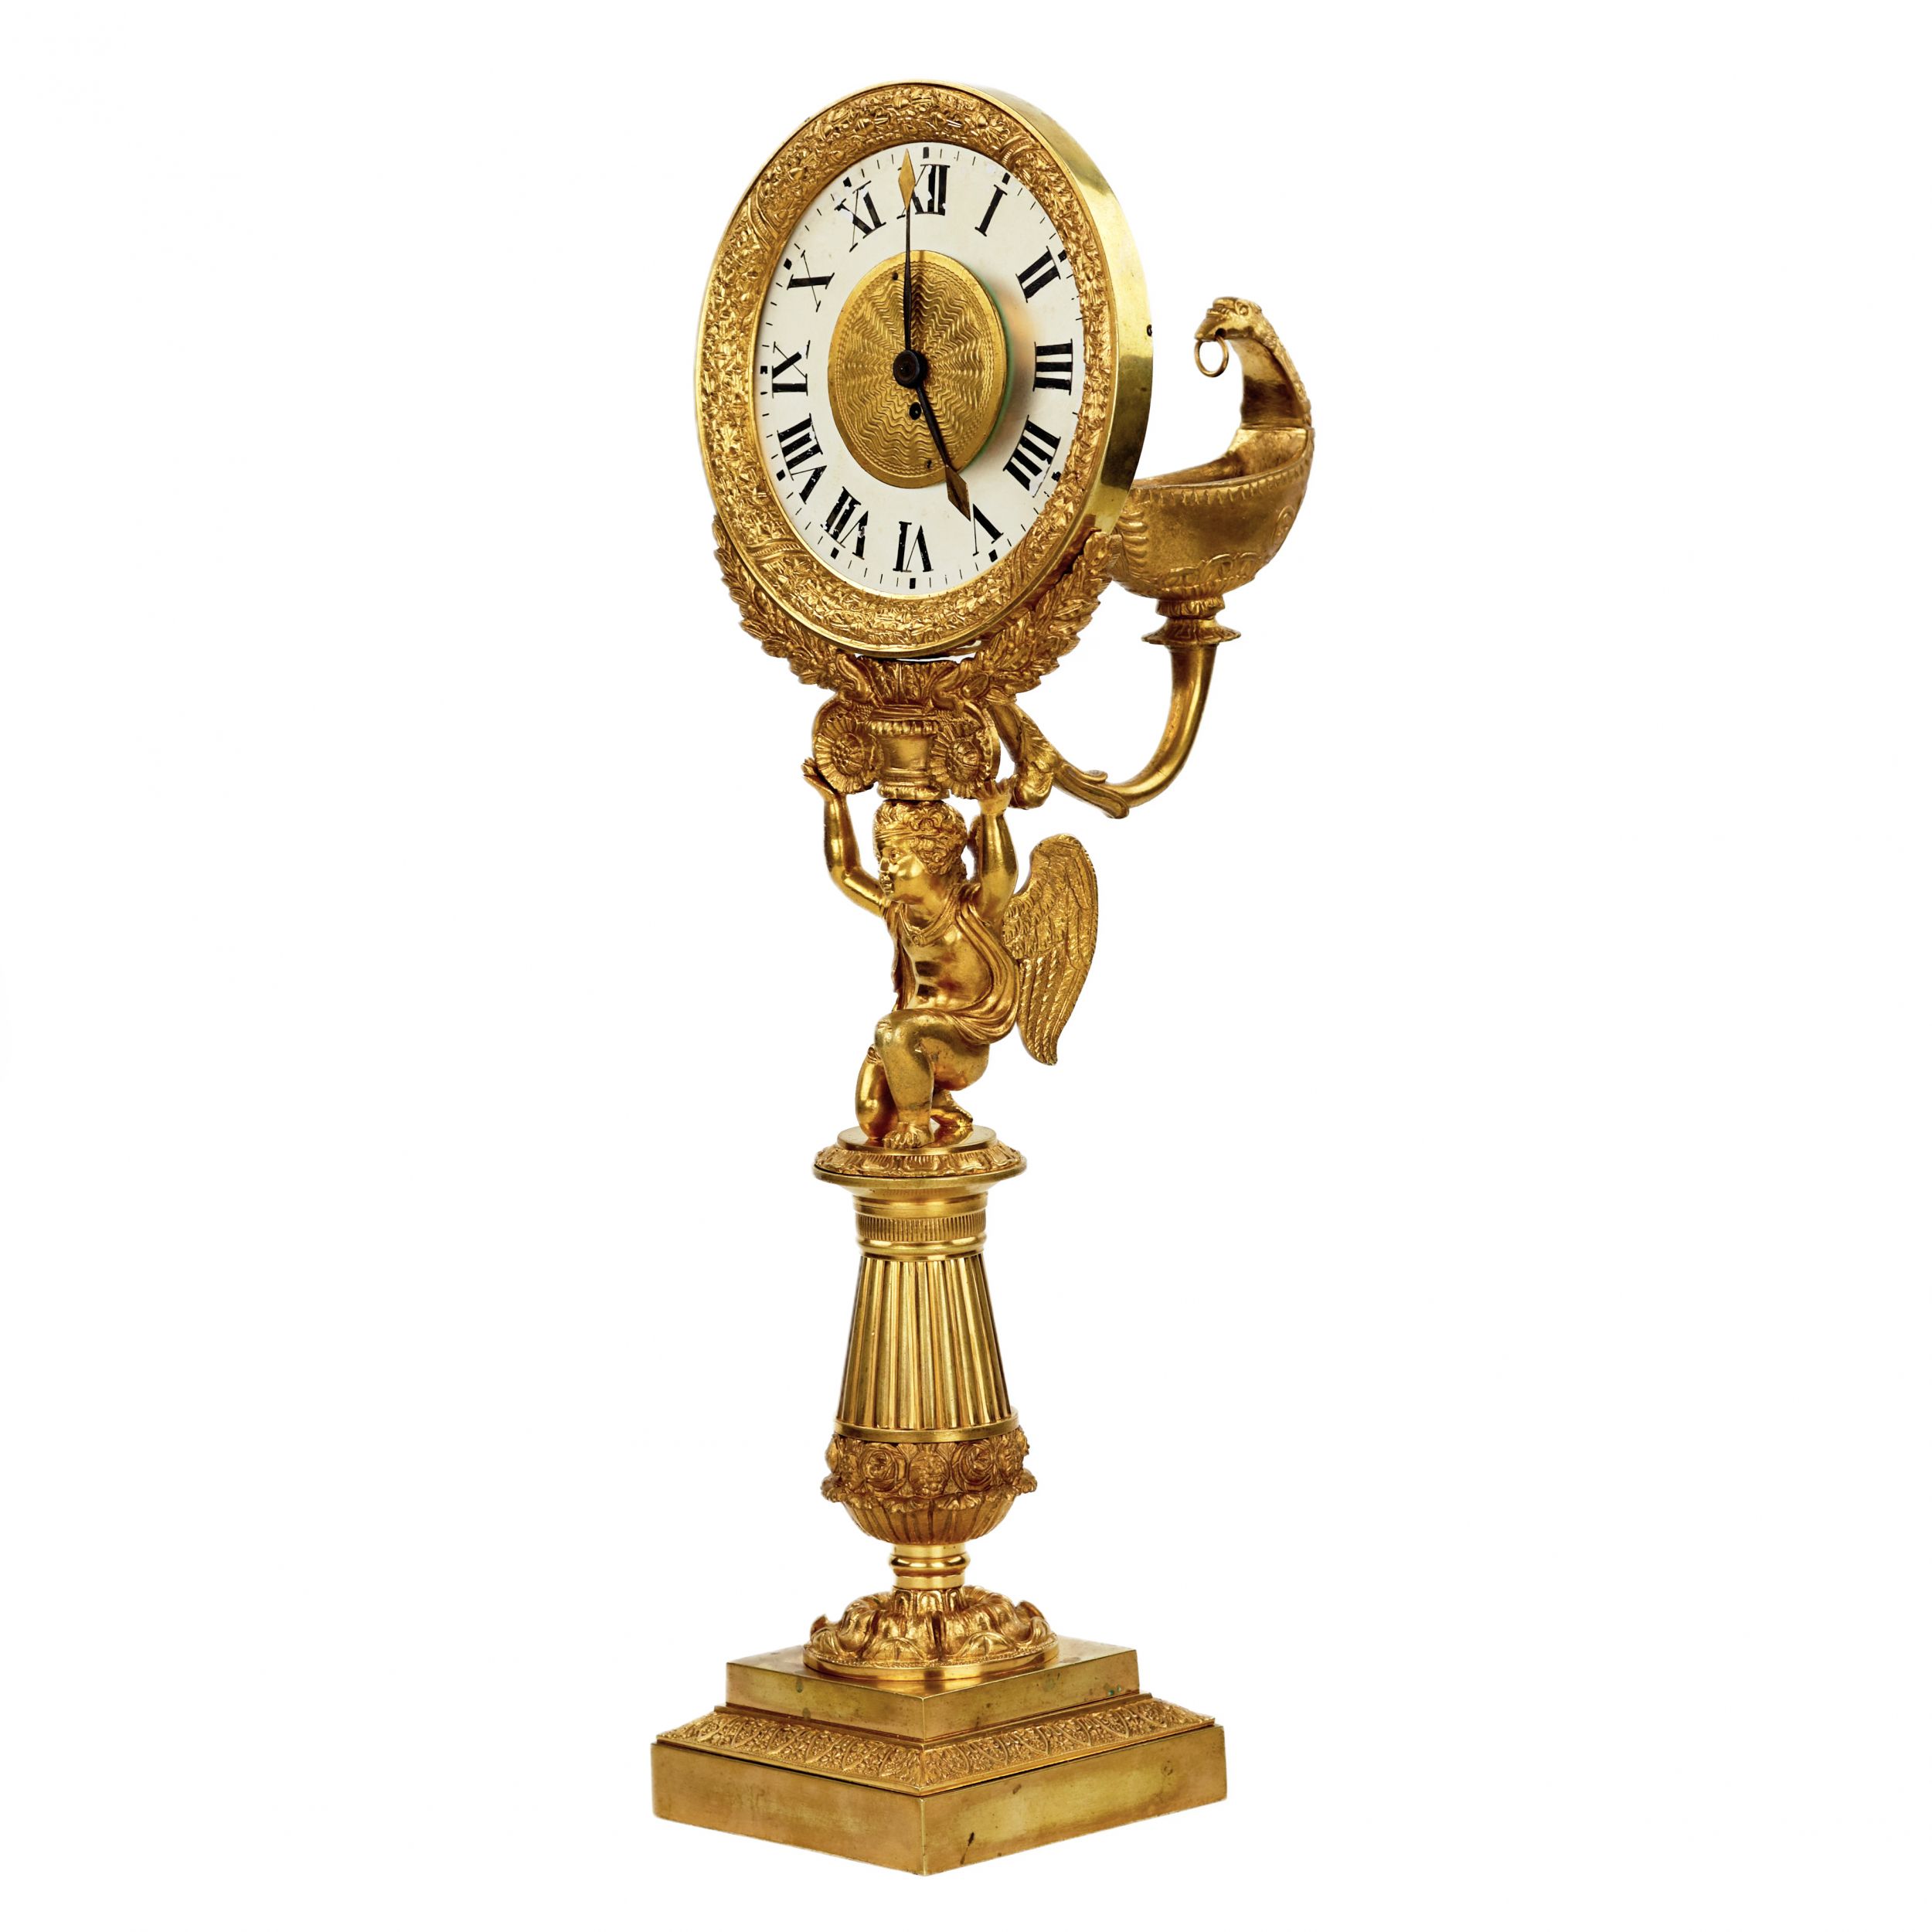 Unique-table-clock-from-the-Louis-XVI-period-Paris-Jean-Jacques-Aubert-1780-